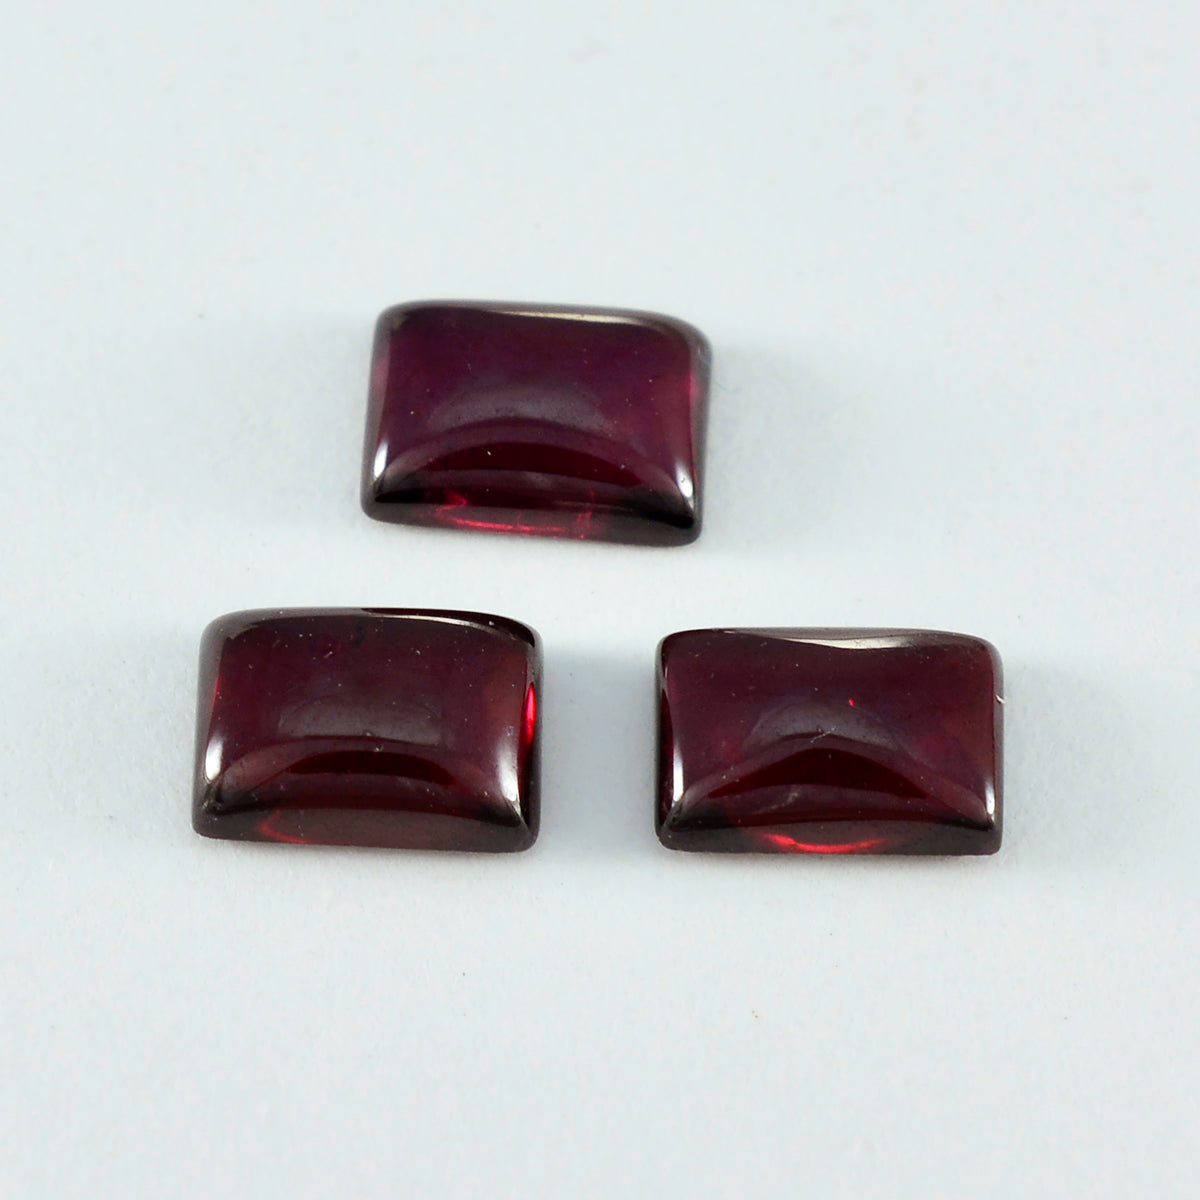 Riyogems 1PC Red Garnet Cabochon 8x10 mm Octagon Shape sweet Quality Loose Gems